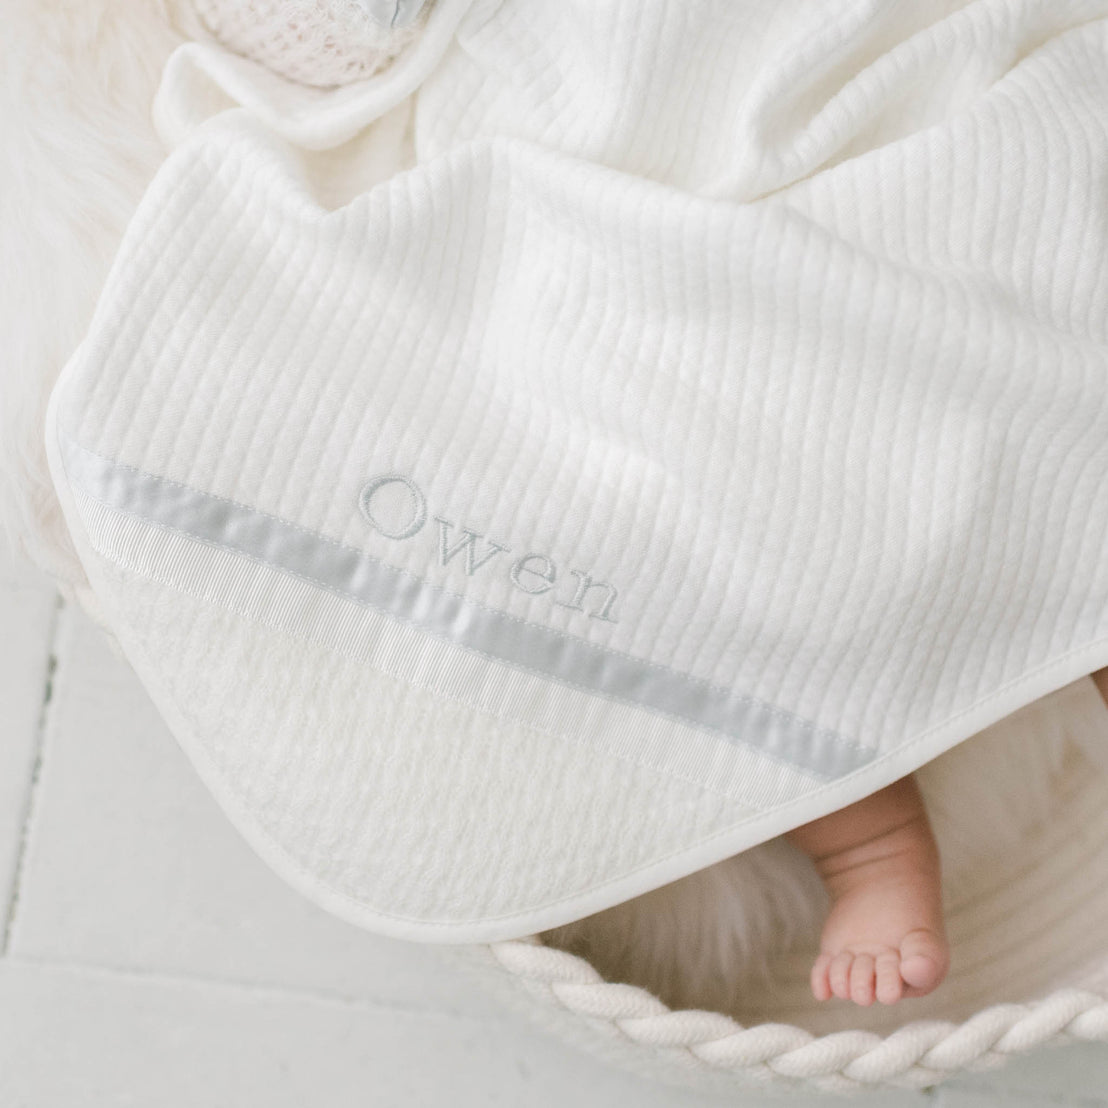 Owen Newborn Gift Set - Save 10%